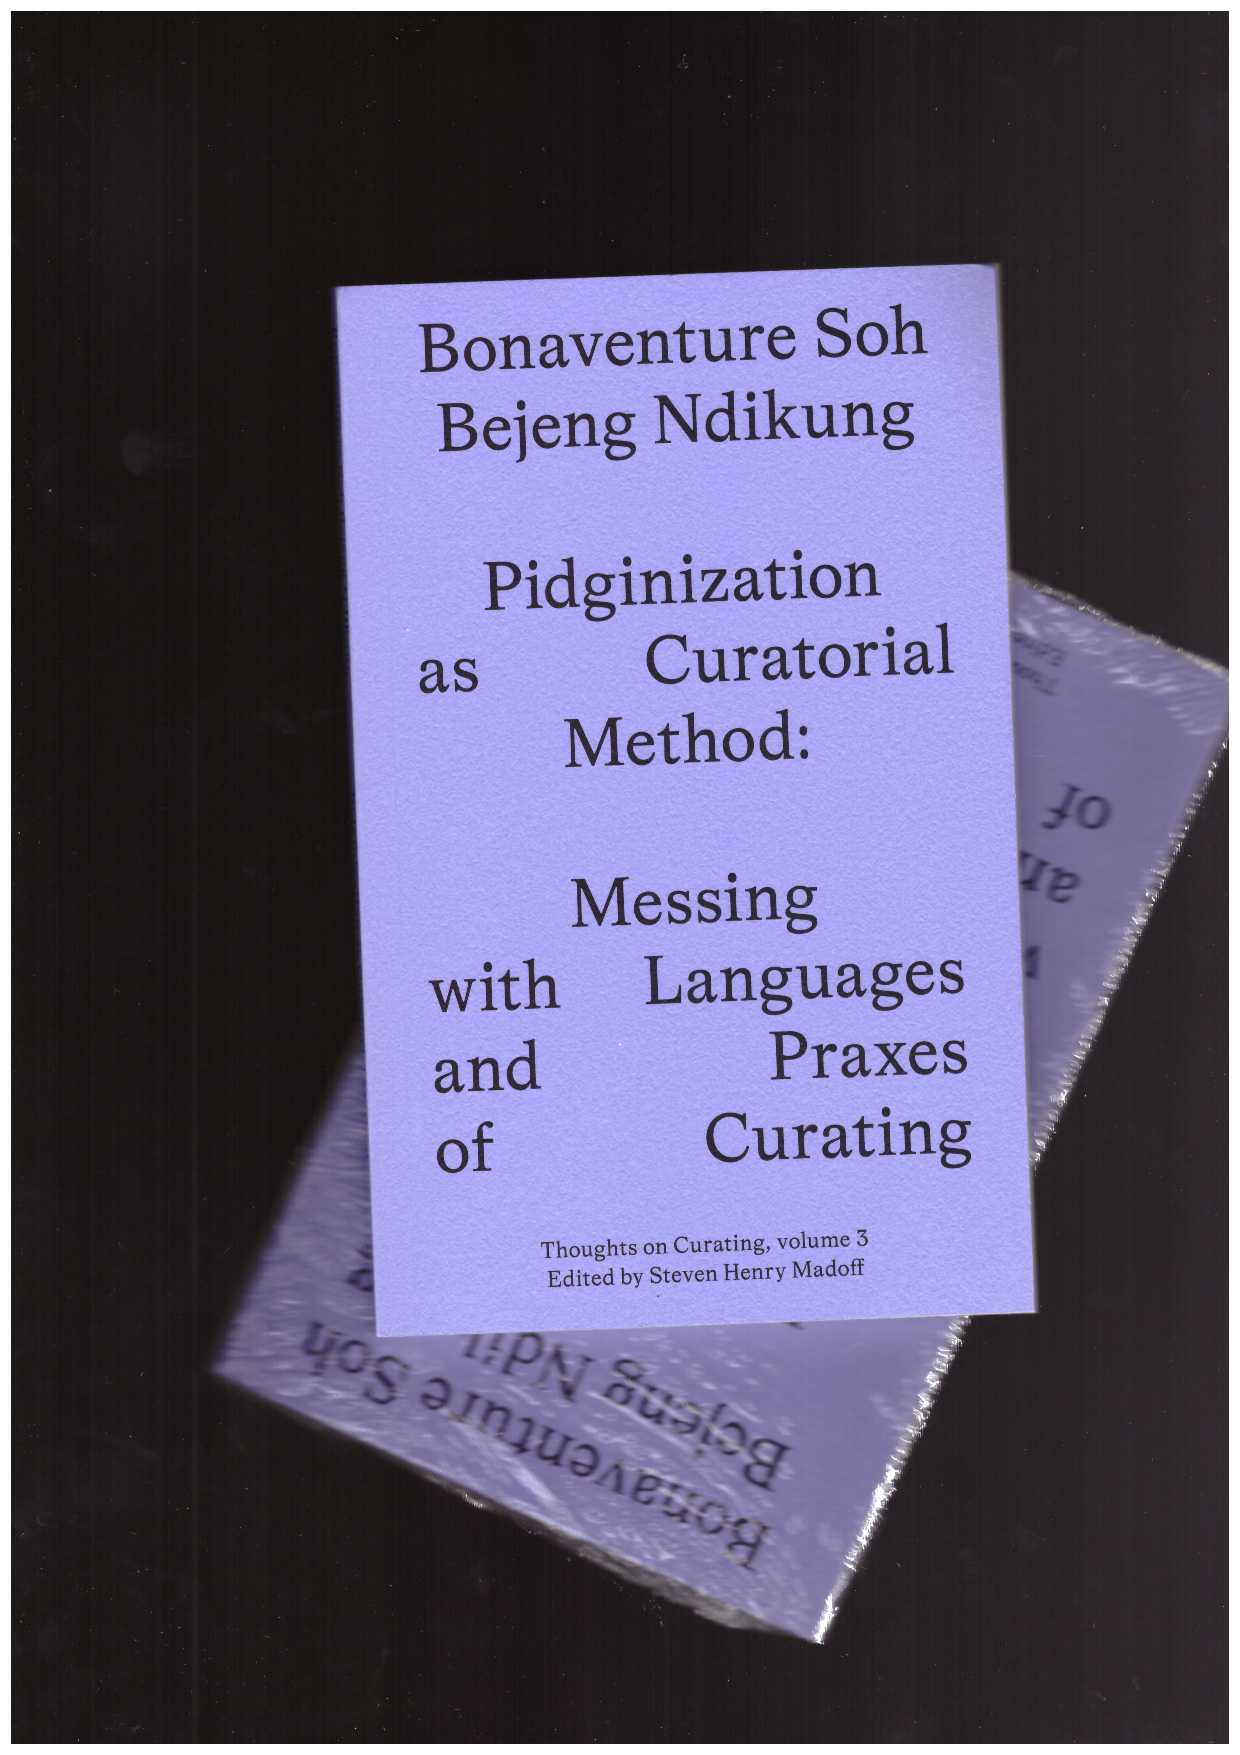 SOH BEJENG NDIKUNG, Bonaventure - Pidginization as Curatorial Method